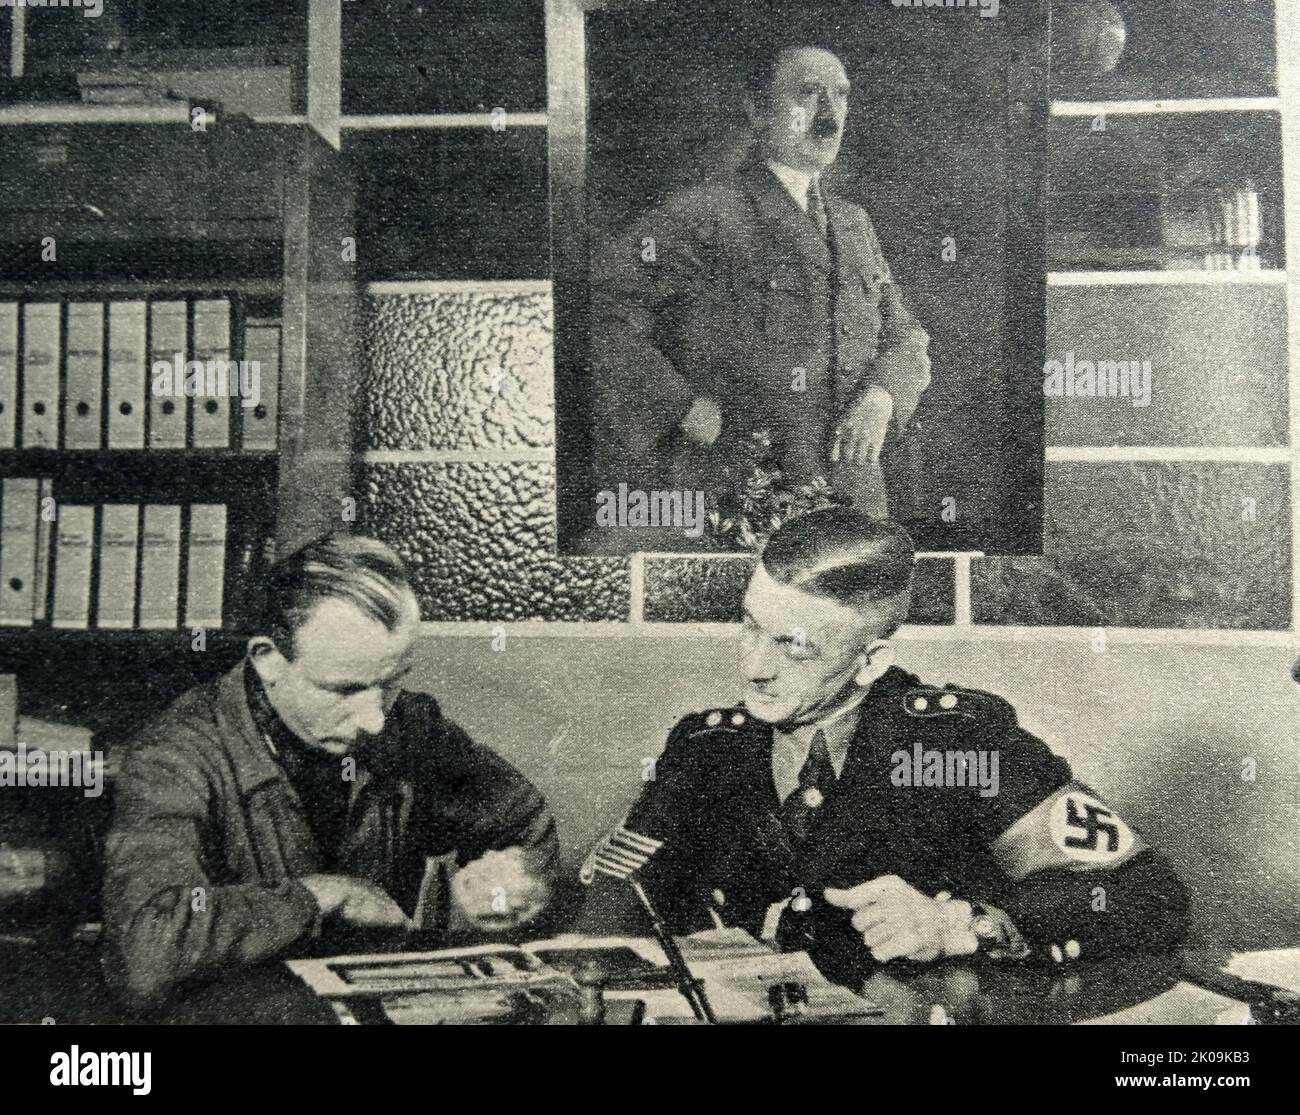 La tempesta nazista Trooper Johann Laub consulta la letteratura delle vacanze aiutata da un funzionario nazista. Lo Sturmabteilung era l'ala paramilitare originale del partito nazista. Ha giocato un ruolo significativo nell'ascesa al potere di Adolf Hitler negli anni '1920s e '1930s. Foto Stock